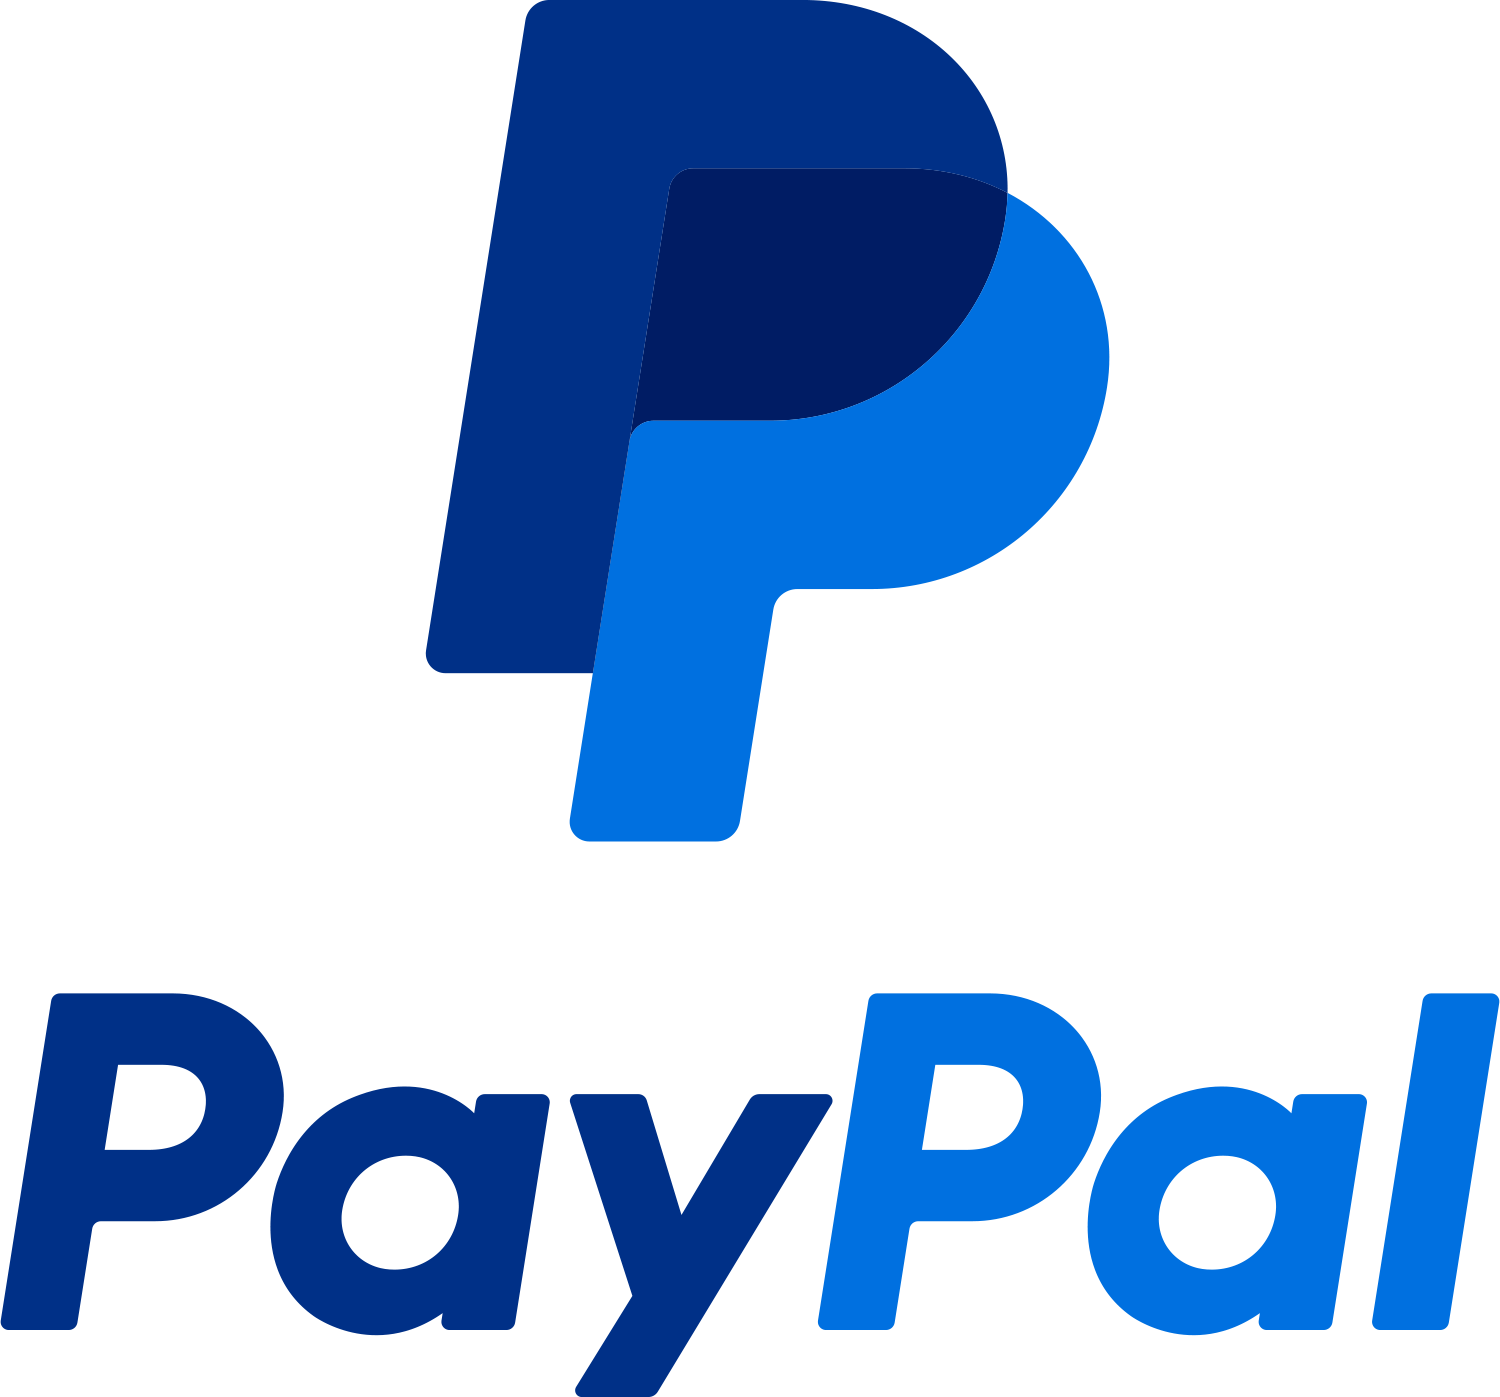 Verbraucherzentrale warnt: Paypal Zahlfunktion steht in der Kritik bei Warenlieferungen in Fake-Shops